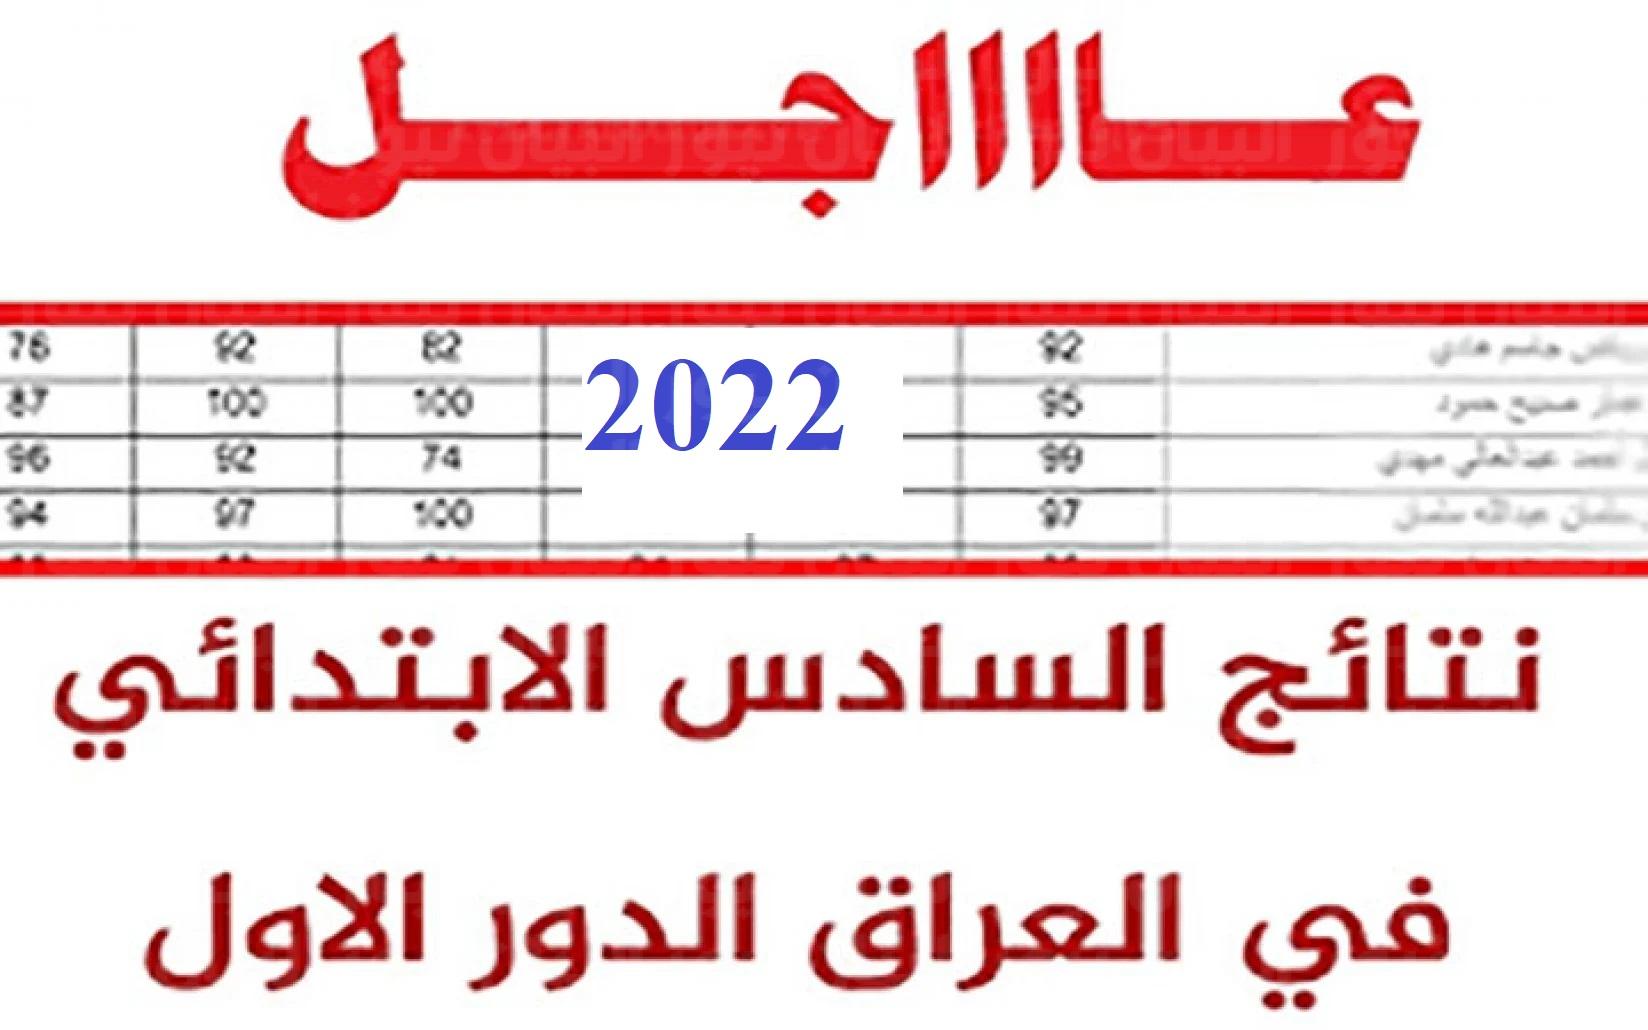 موقع نتائجنا نتائج السادس الابتدائي 2022 العراق || نتيجة سادس ابتدائي العراق أونلاين بِالِاسْمِ وَرَقْمِ اَلِامْتِحَانِ